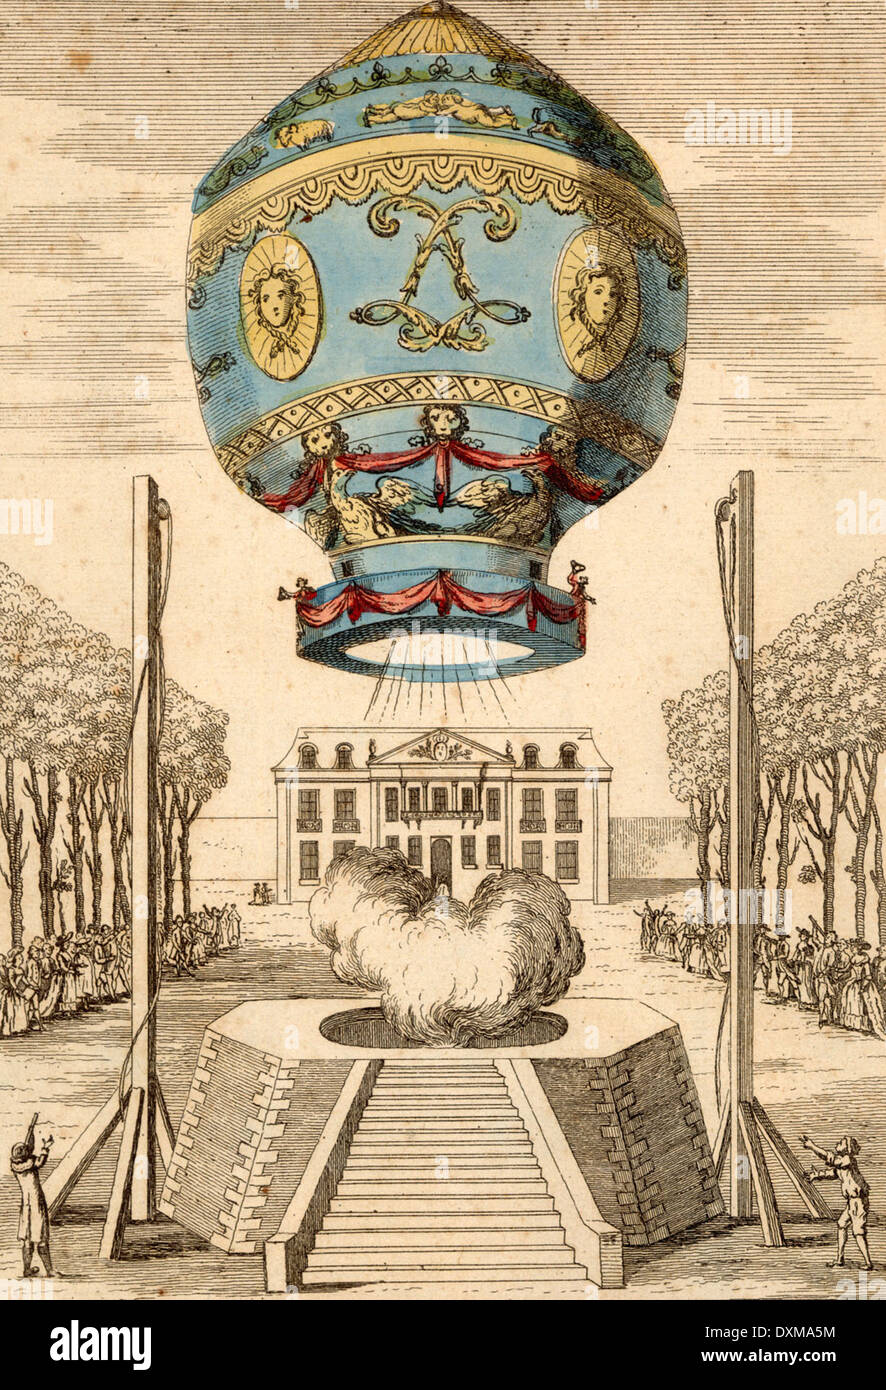 Les premiers êtres humains à prendre l'air en vol libre le 21 novembre 1783 à bord d'un ballon Montgolfier. Banque D'Images